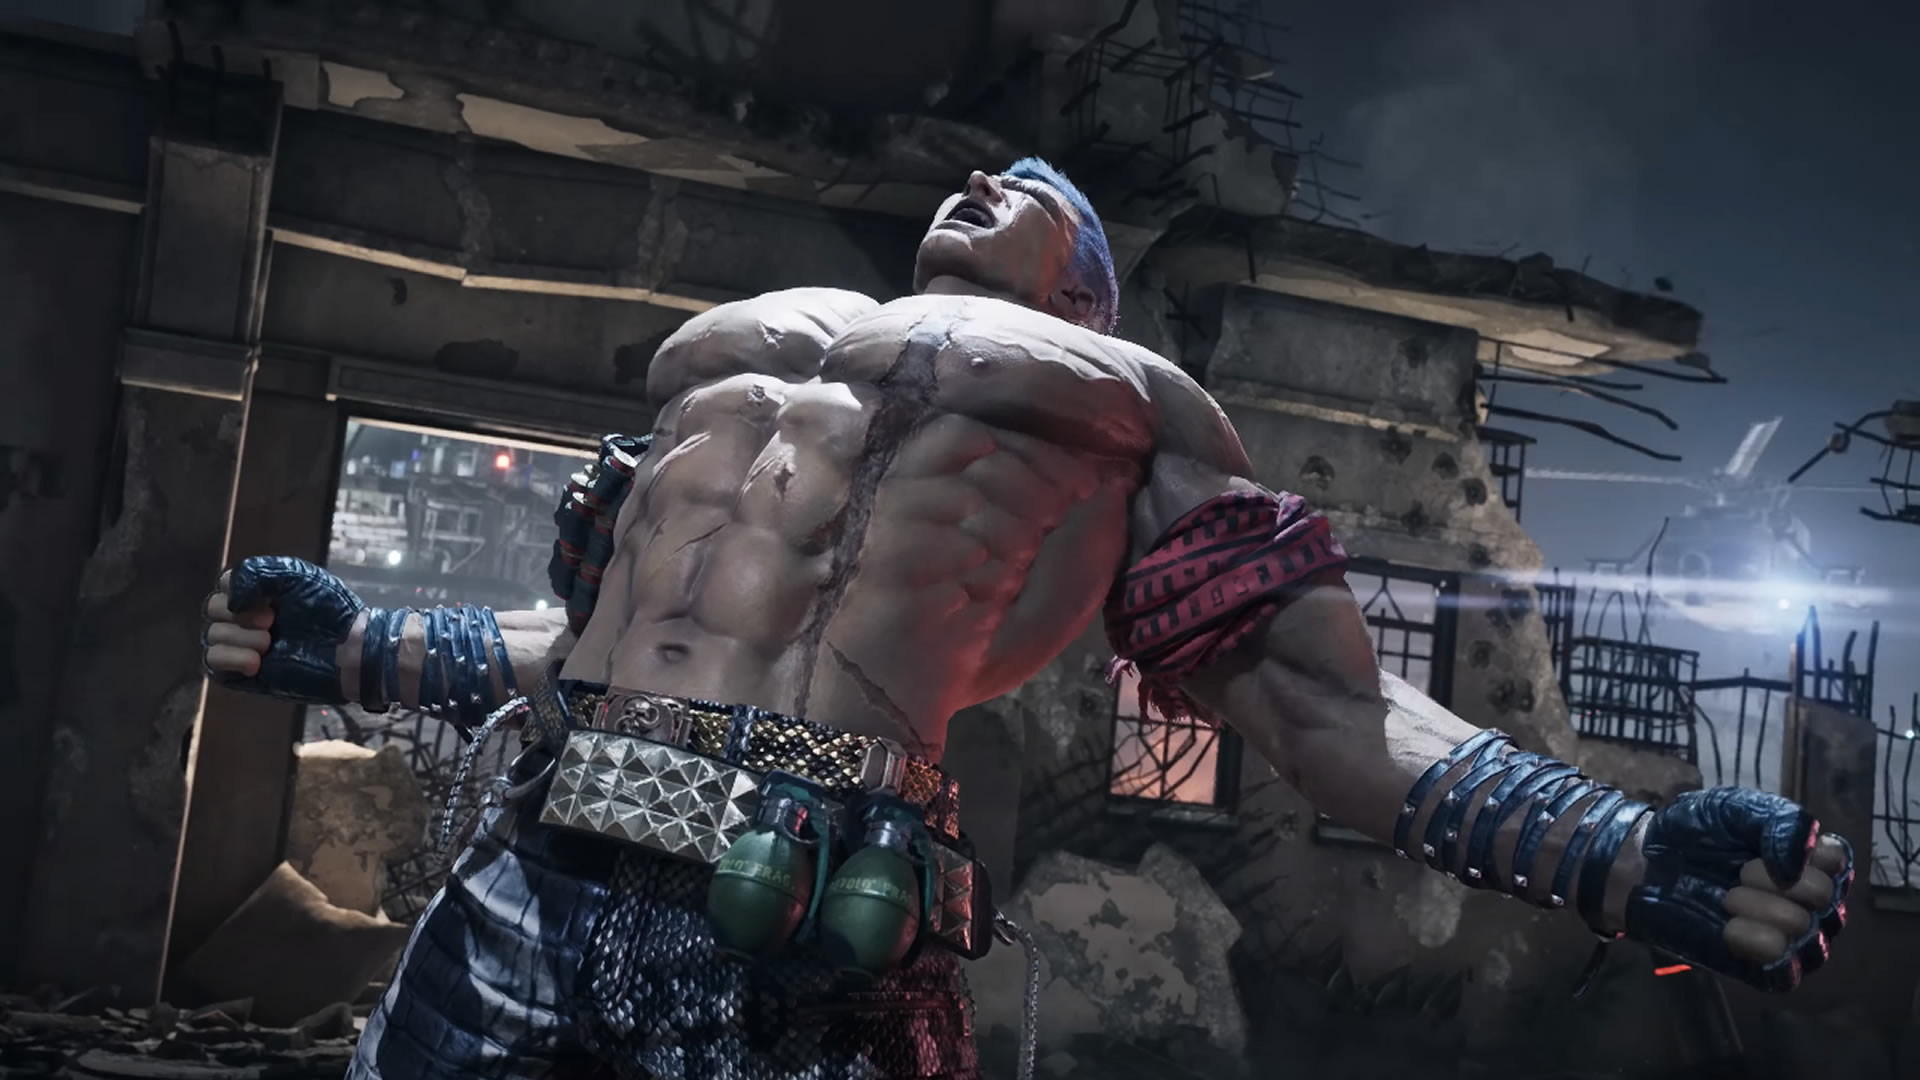 Tekken acaba de anunciar a volta de um dos seus personagens mais icônicos:  Bryan Fury.